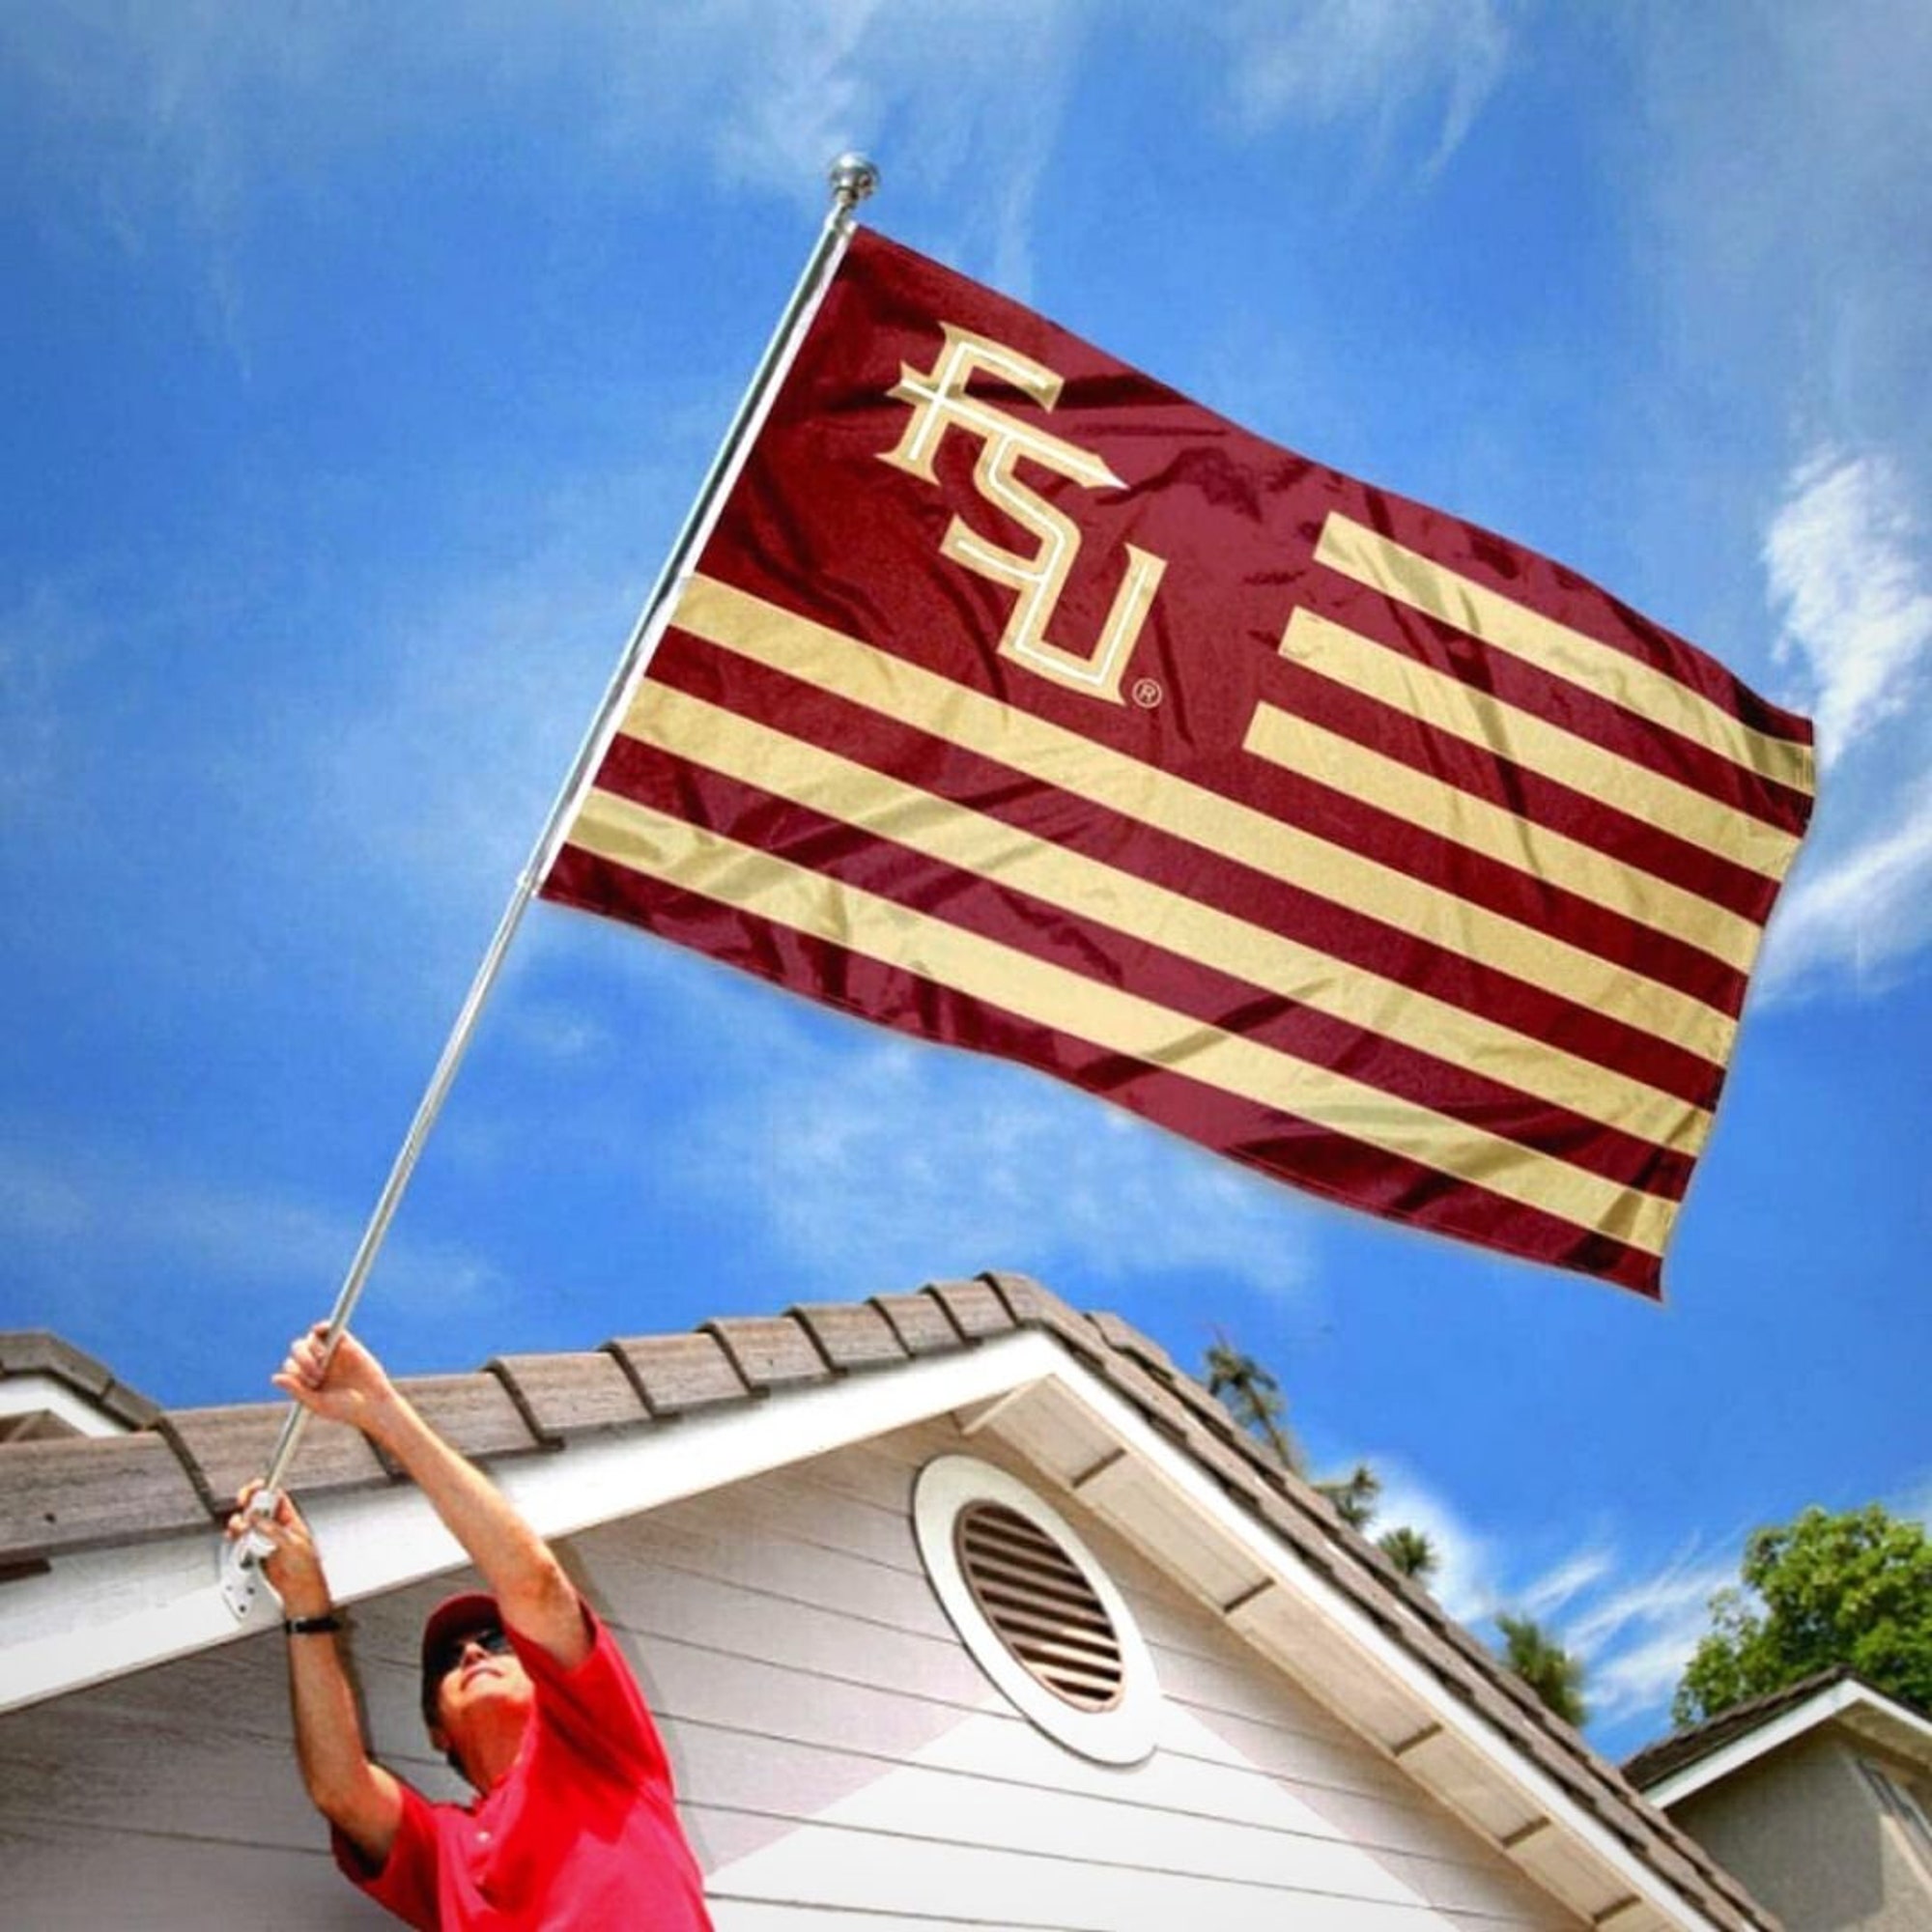 Florida State Seminoles Football Team House Flag